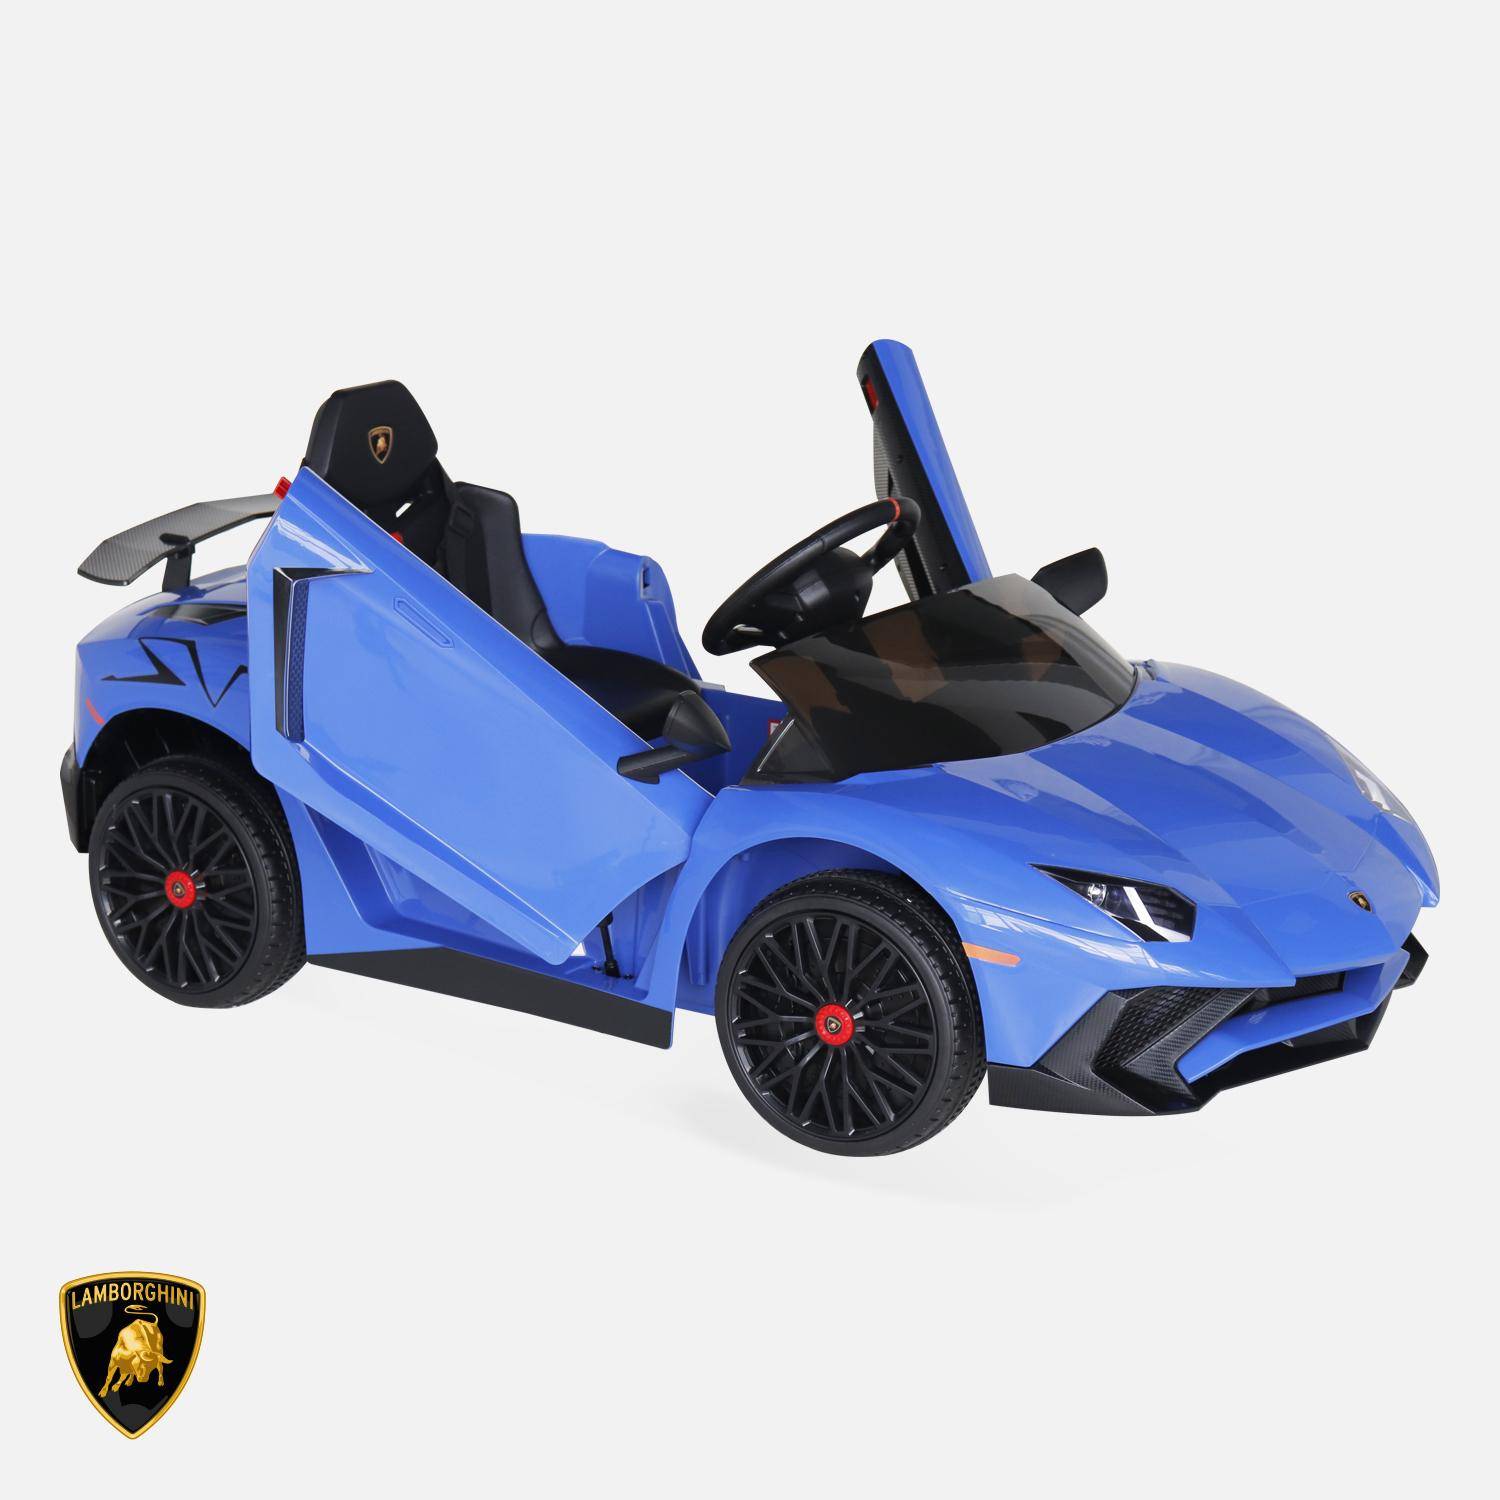 Voiture électrique 12V pour enfant Lamborghini, bleu, 1 place, avec autoradio, télécommande, MP3, port USB et phares fonctionnels Photo2